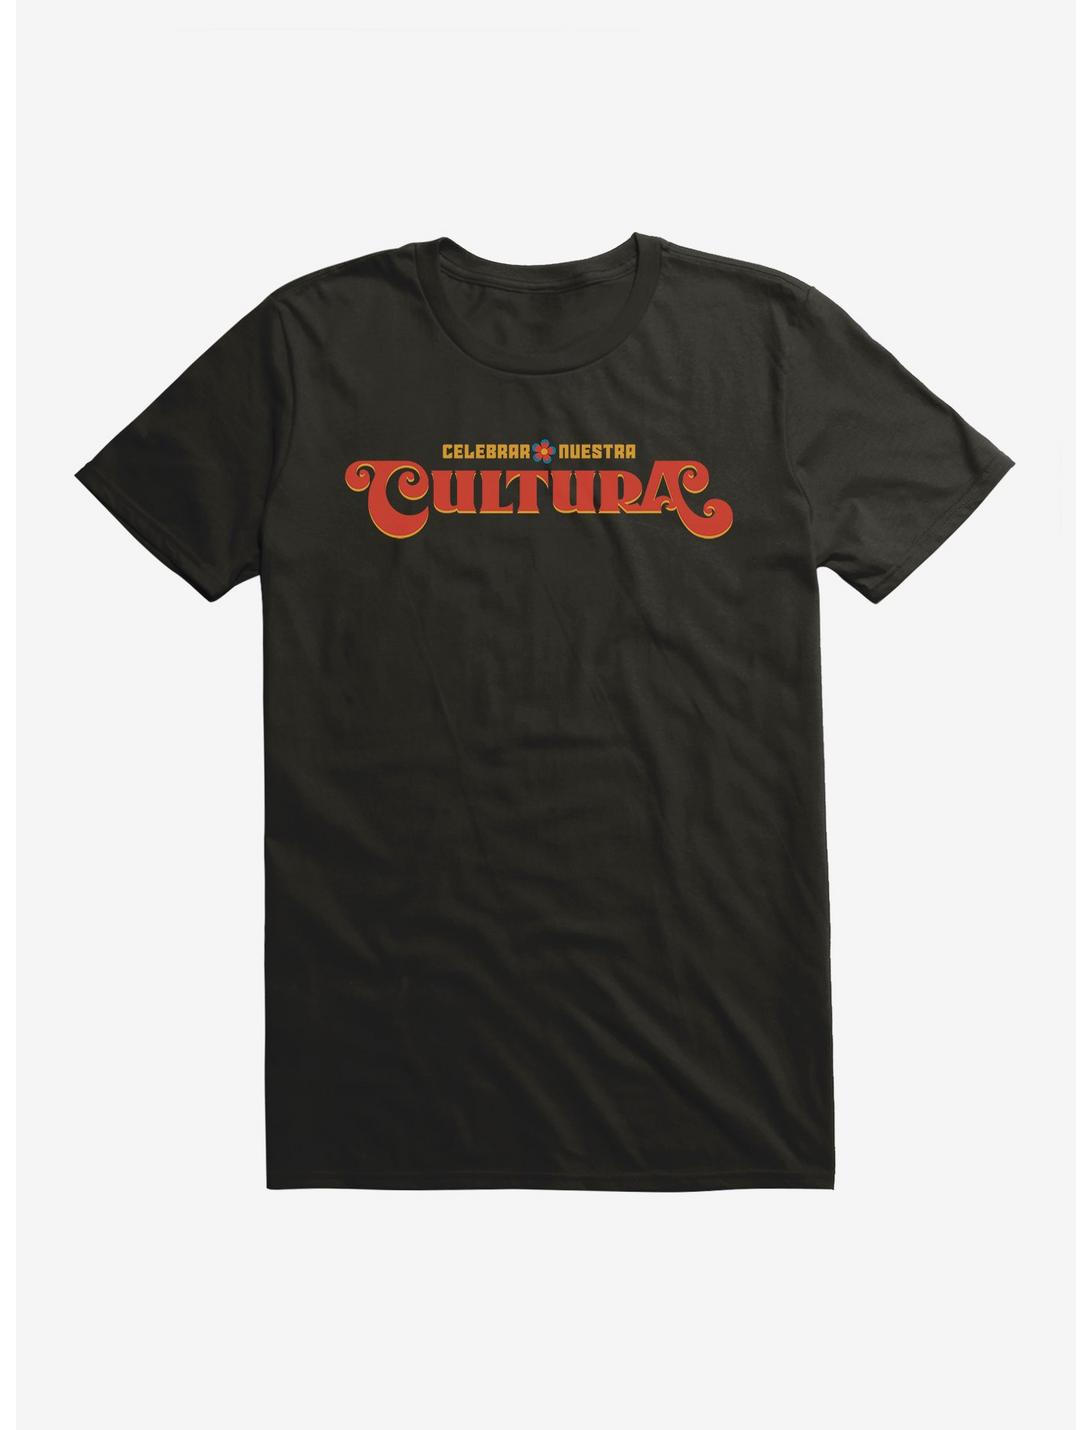 Celebrar Nuestra Cultura T-Shirt, , hi-res